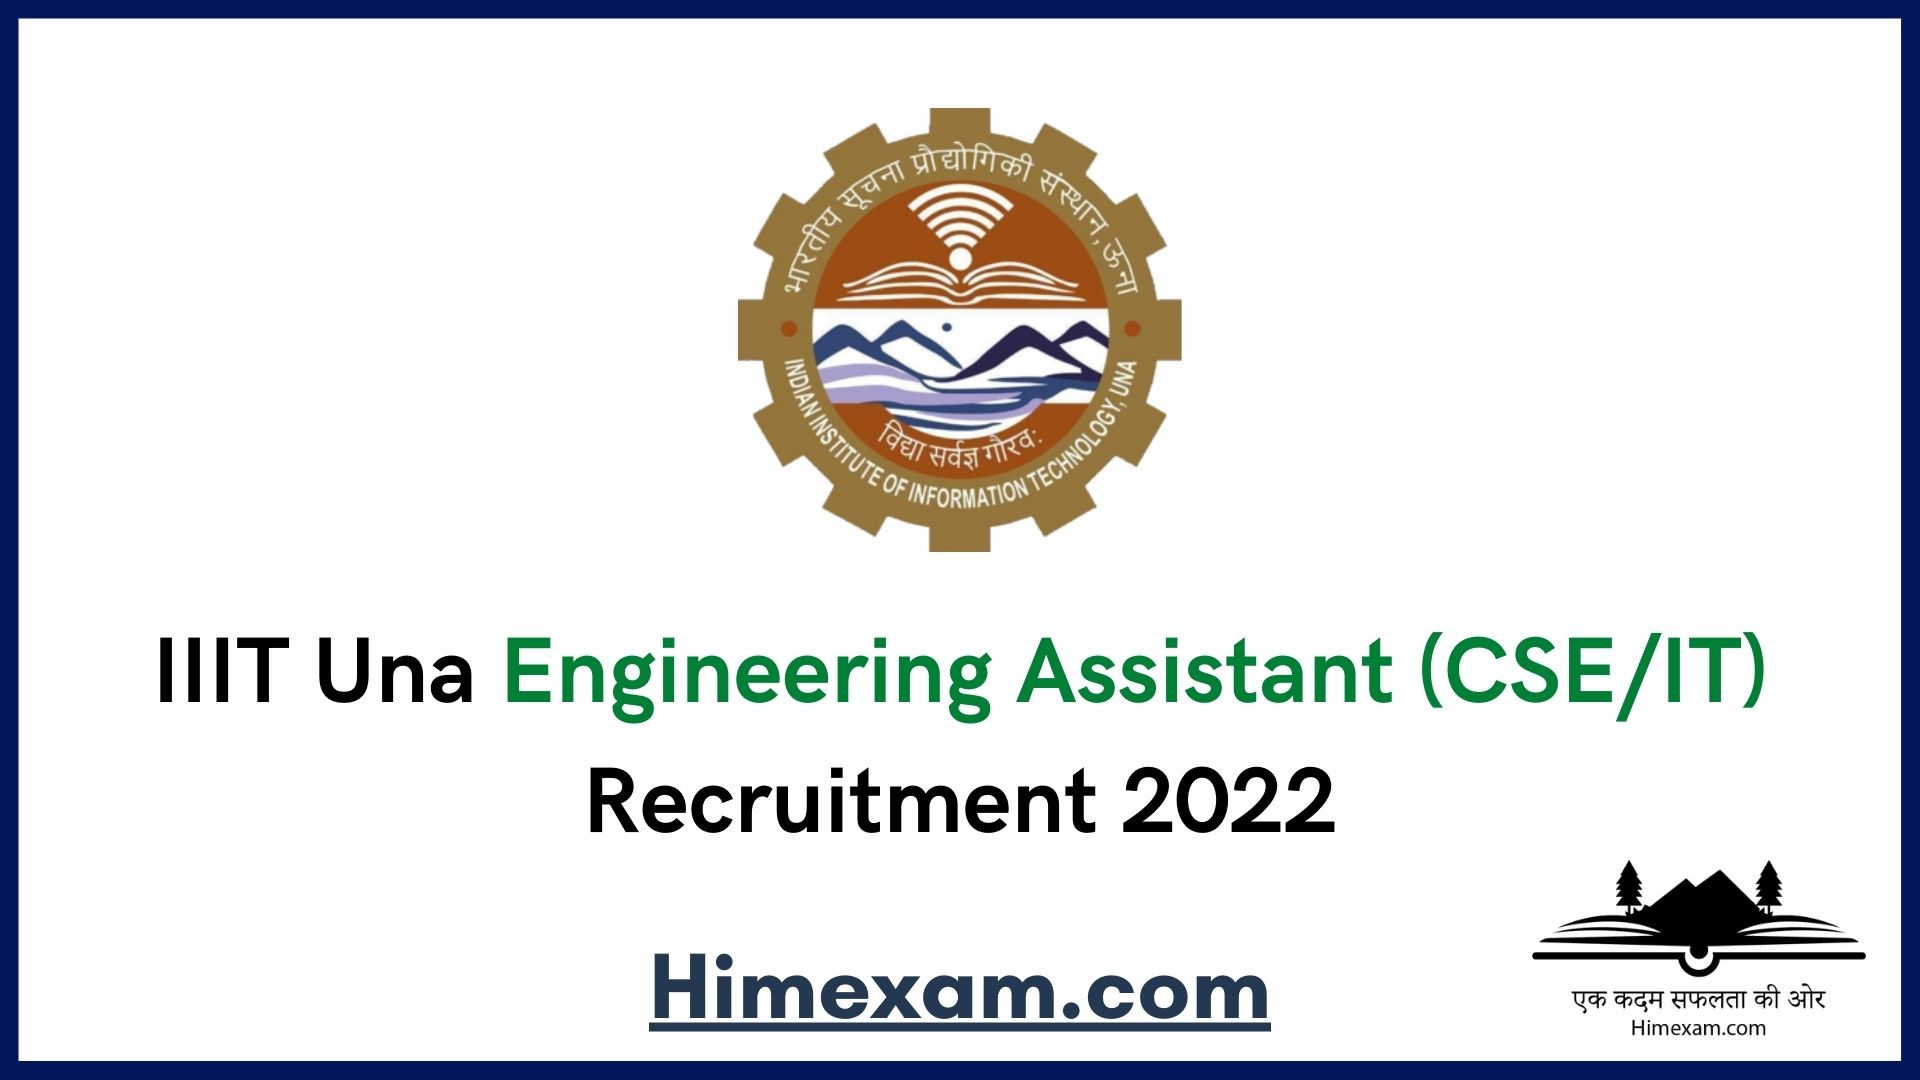 IIIT Una Engineering Assistant (CSE/IT) Recruitment 2022